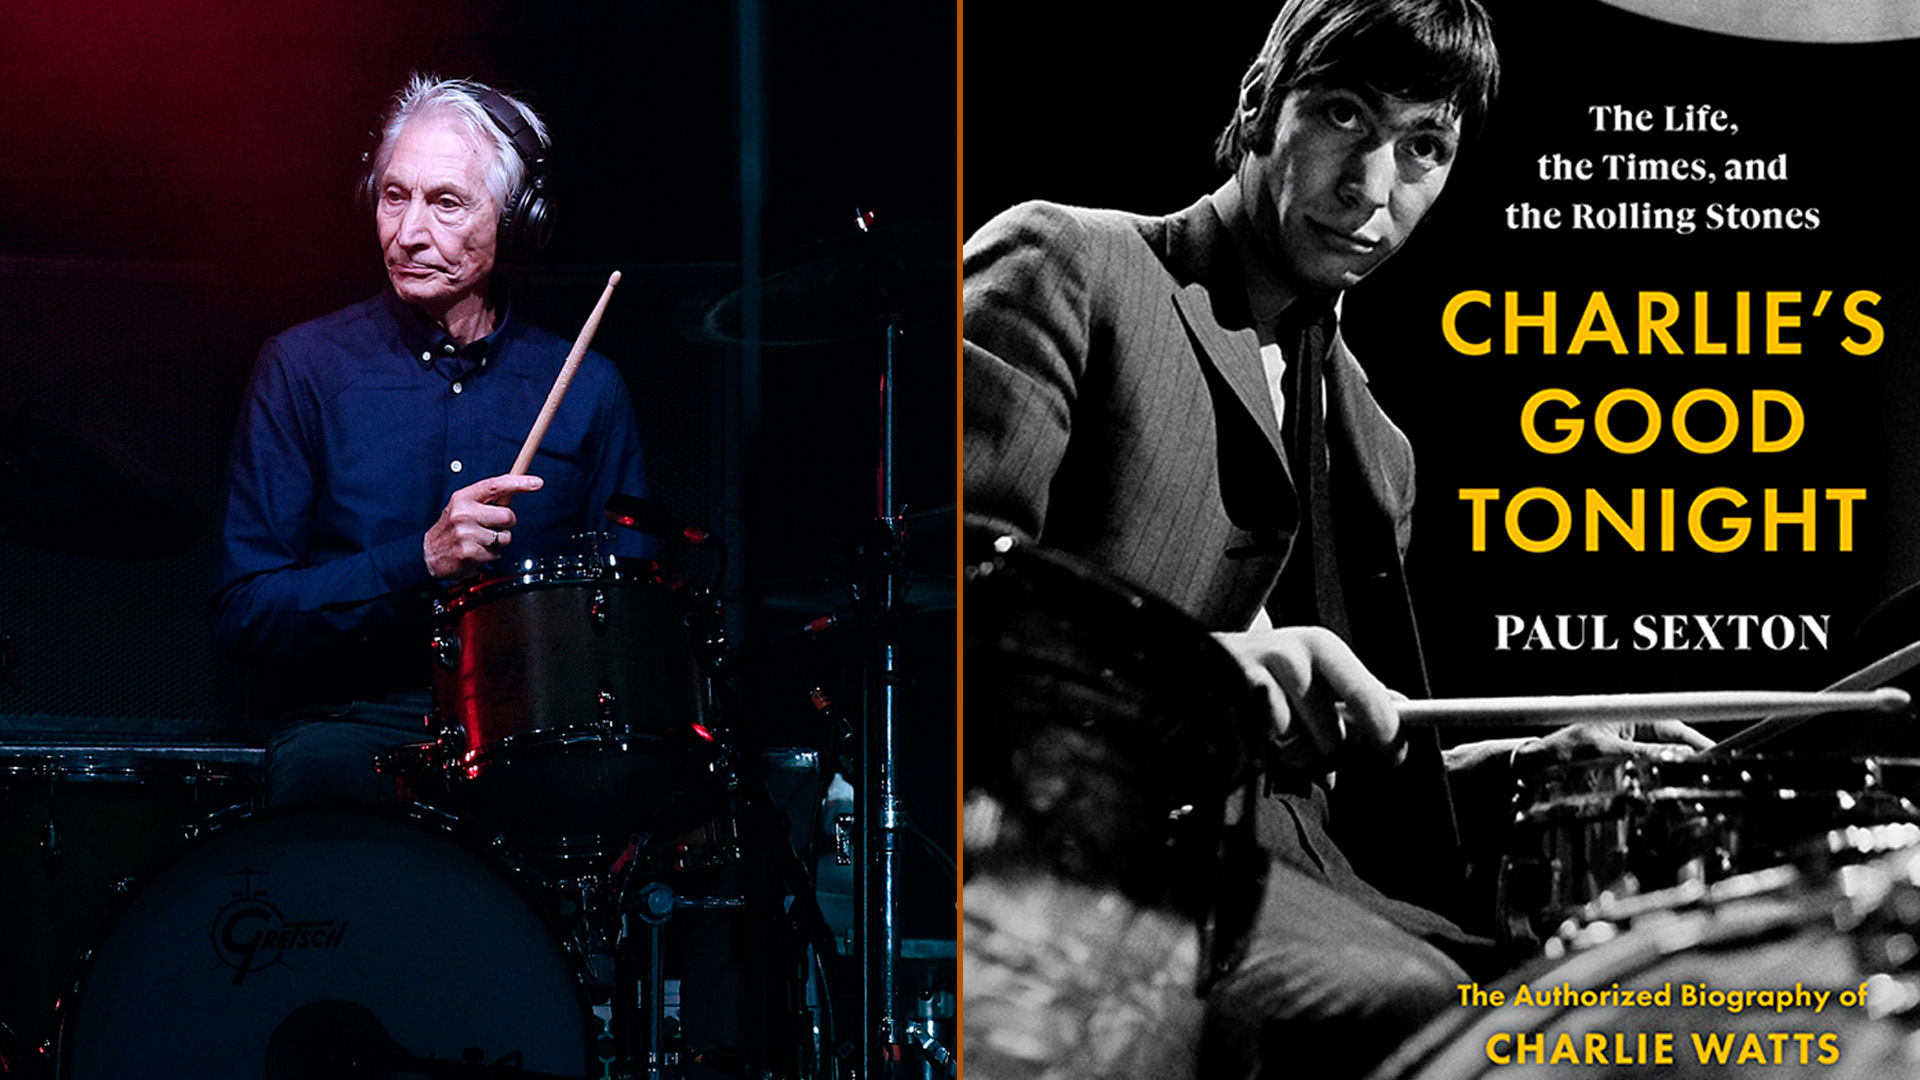 “No se consideraba un buen baterista”: la reveladora biografía de Charlie Watts en la que hablan Mick Jagger y Keith Richards